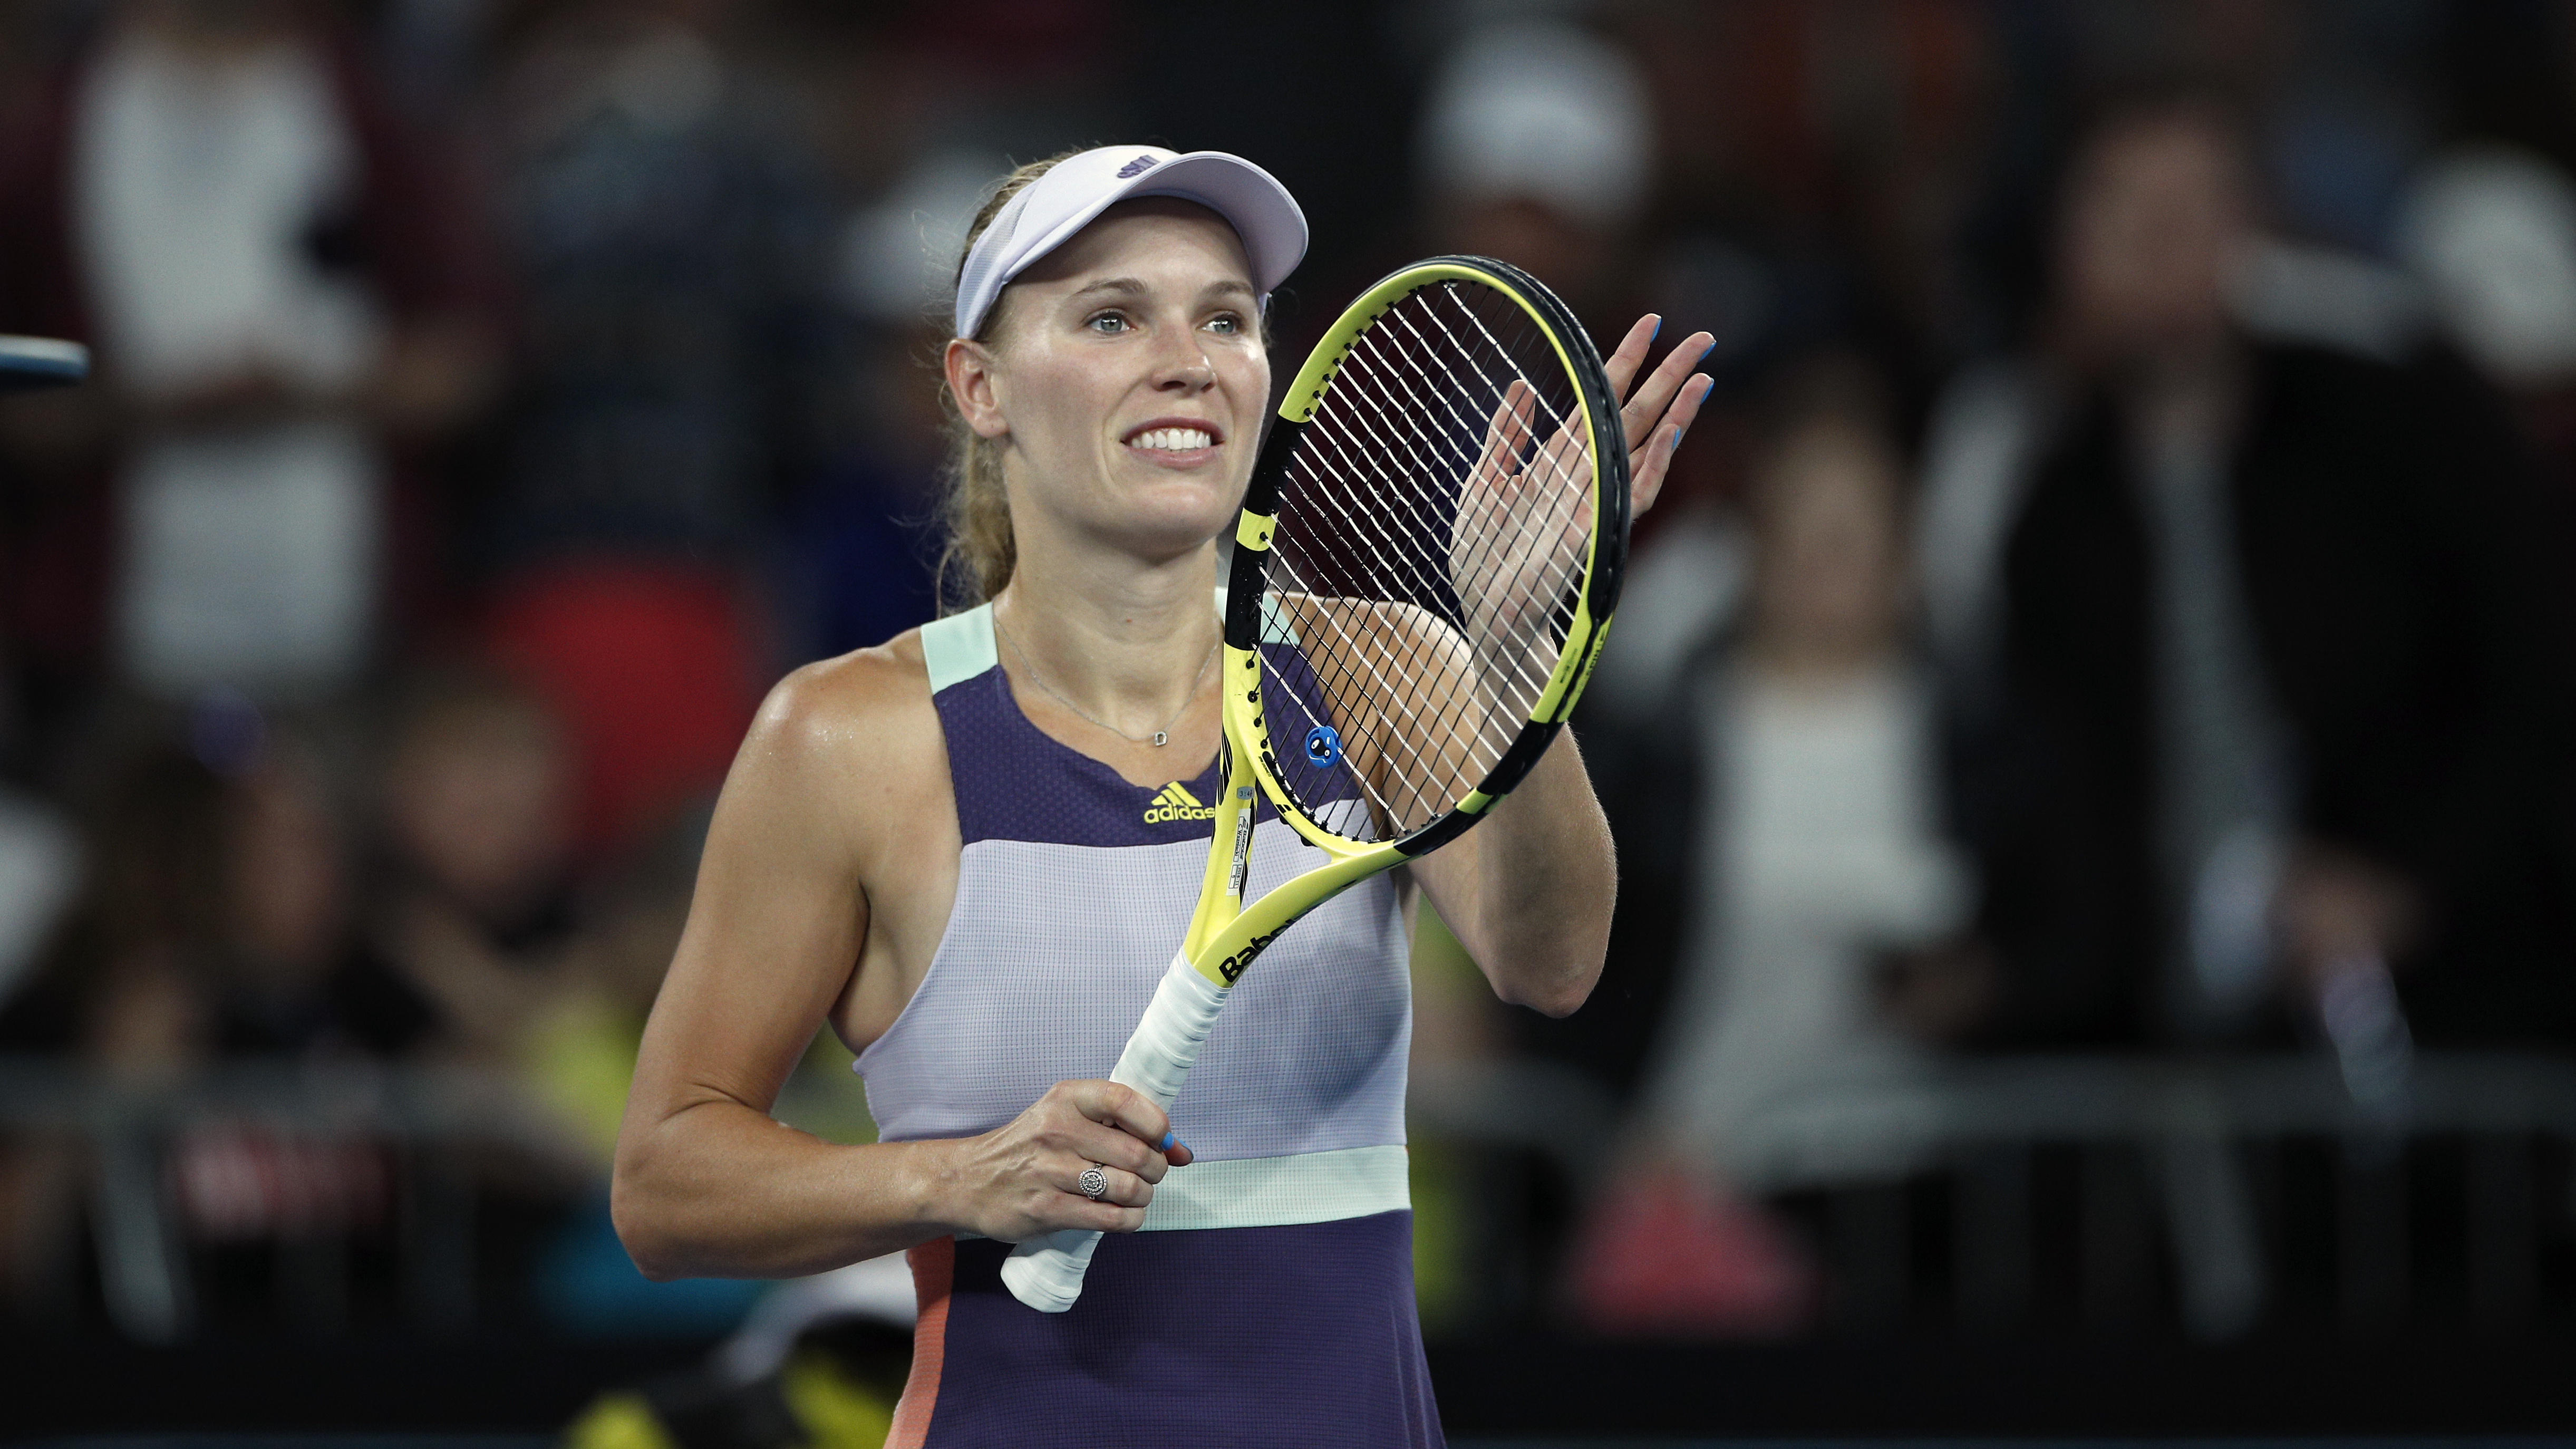 Caroline Wozniacki is returning to tennis, play U.S. Open